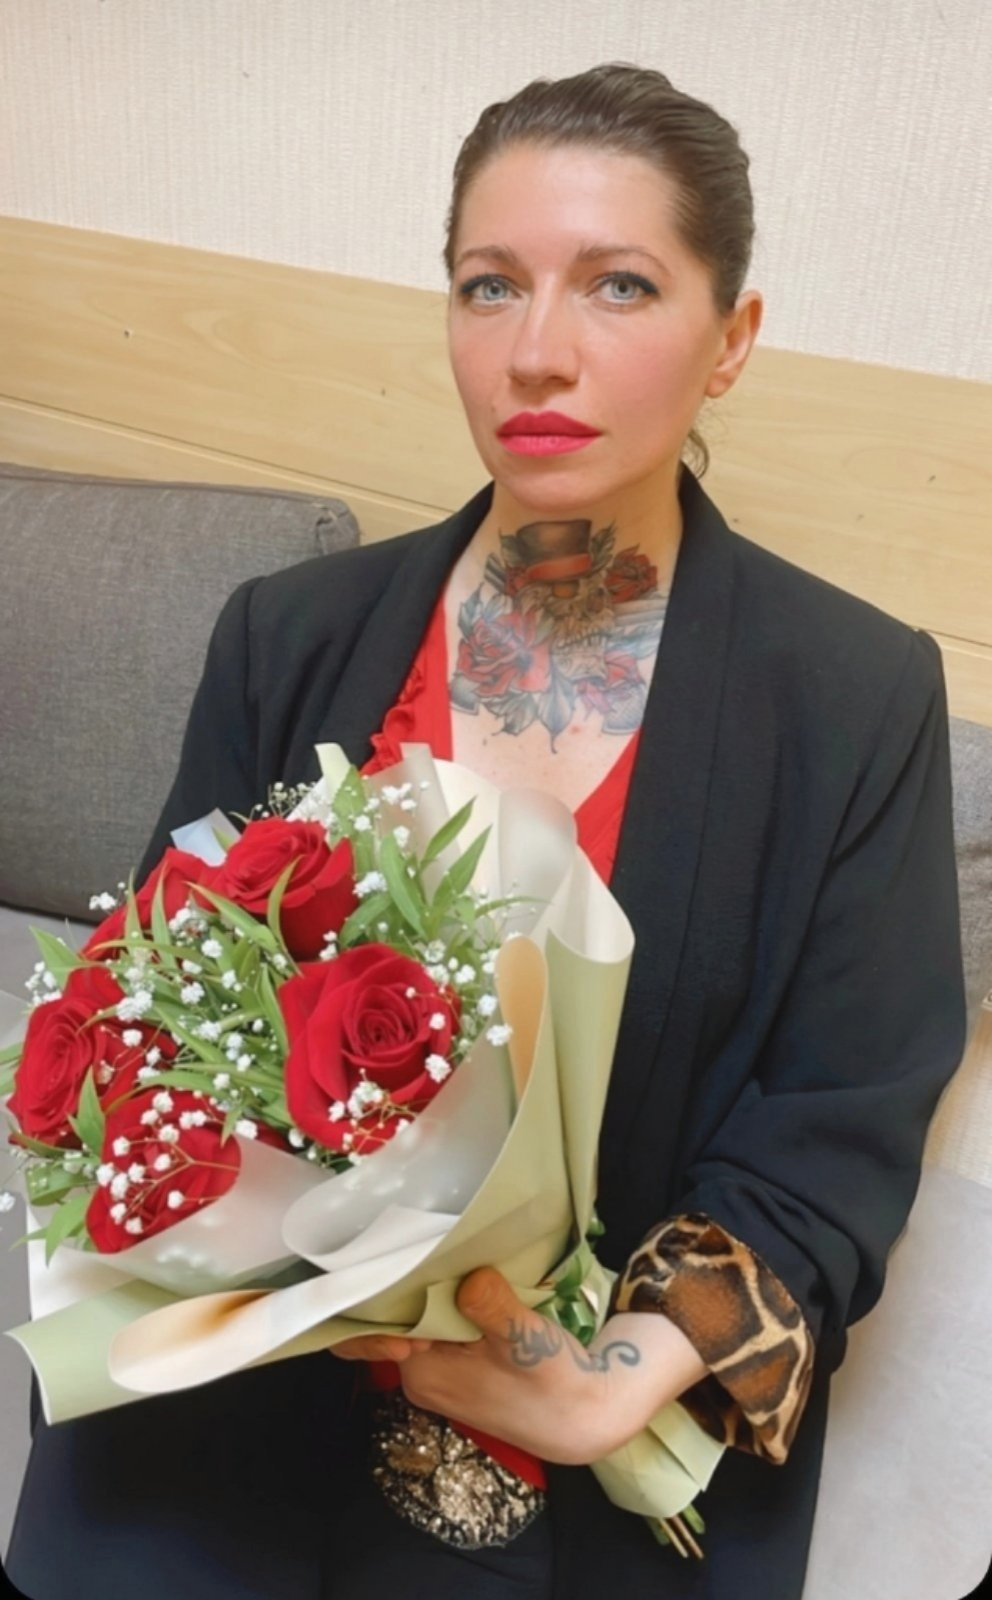 На день рождения Дима с курьером смог передать Лене подарок — букет цветов